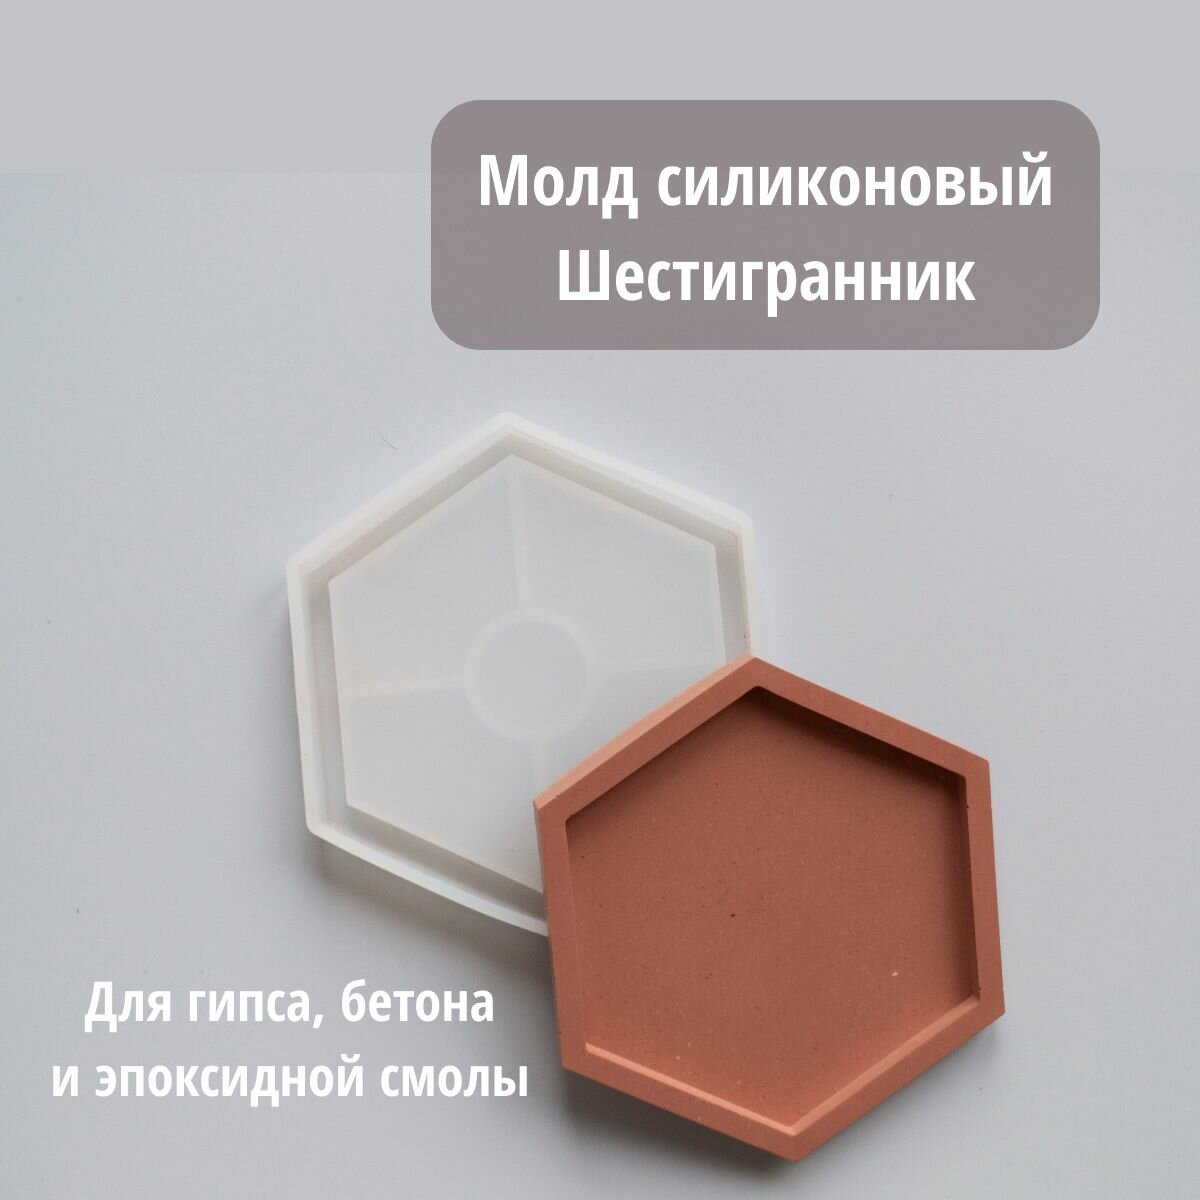 Форма для гипса и бетона - Молд силиконовый Шестигранник 10 см